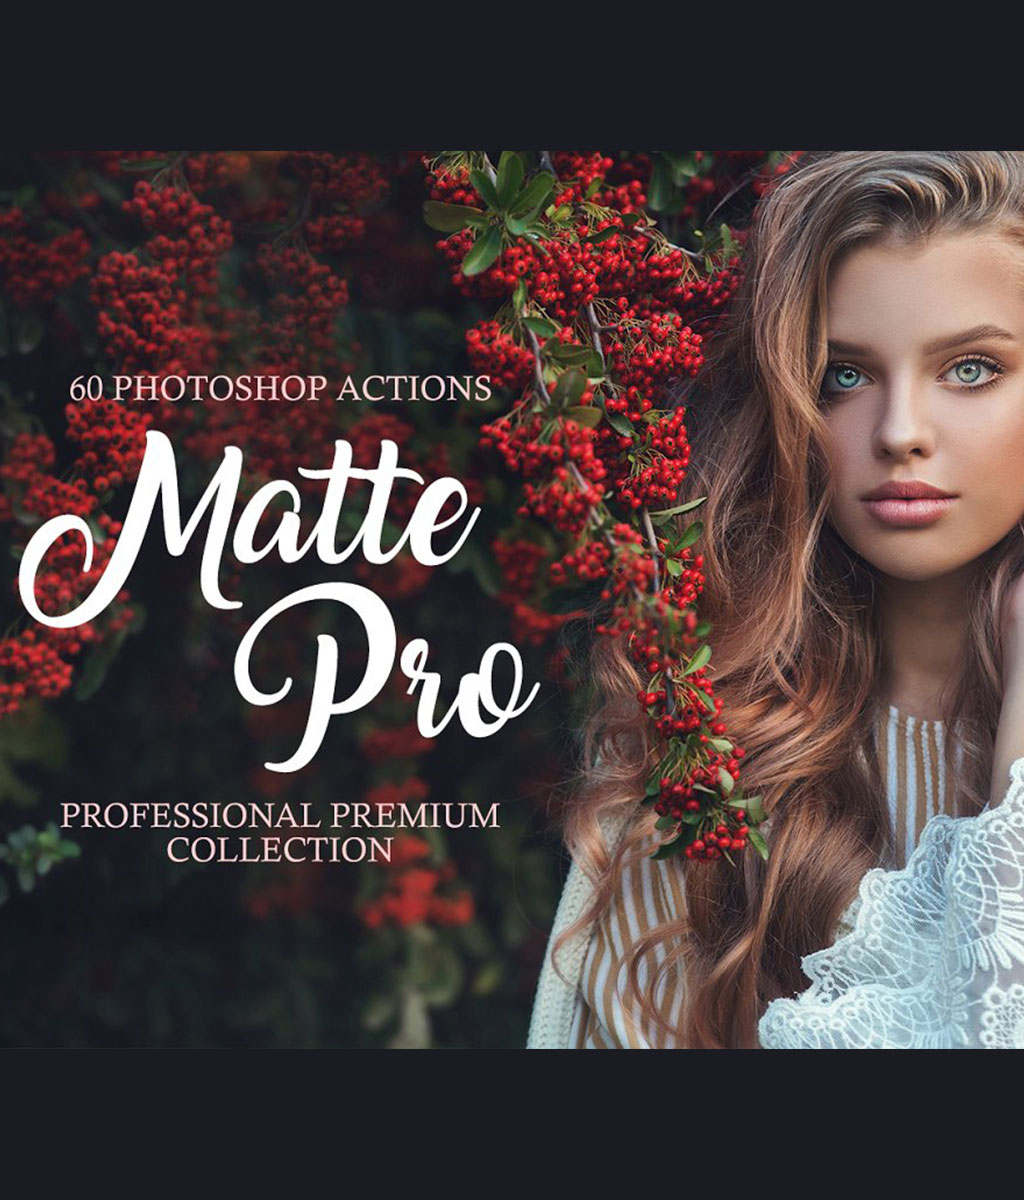 Matte Pro Photoshop Actions